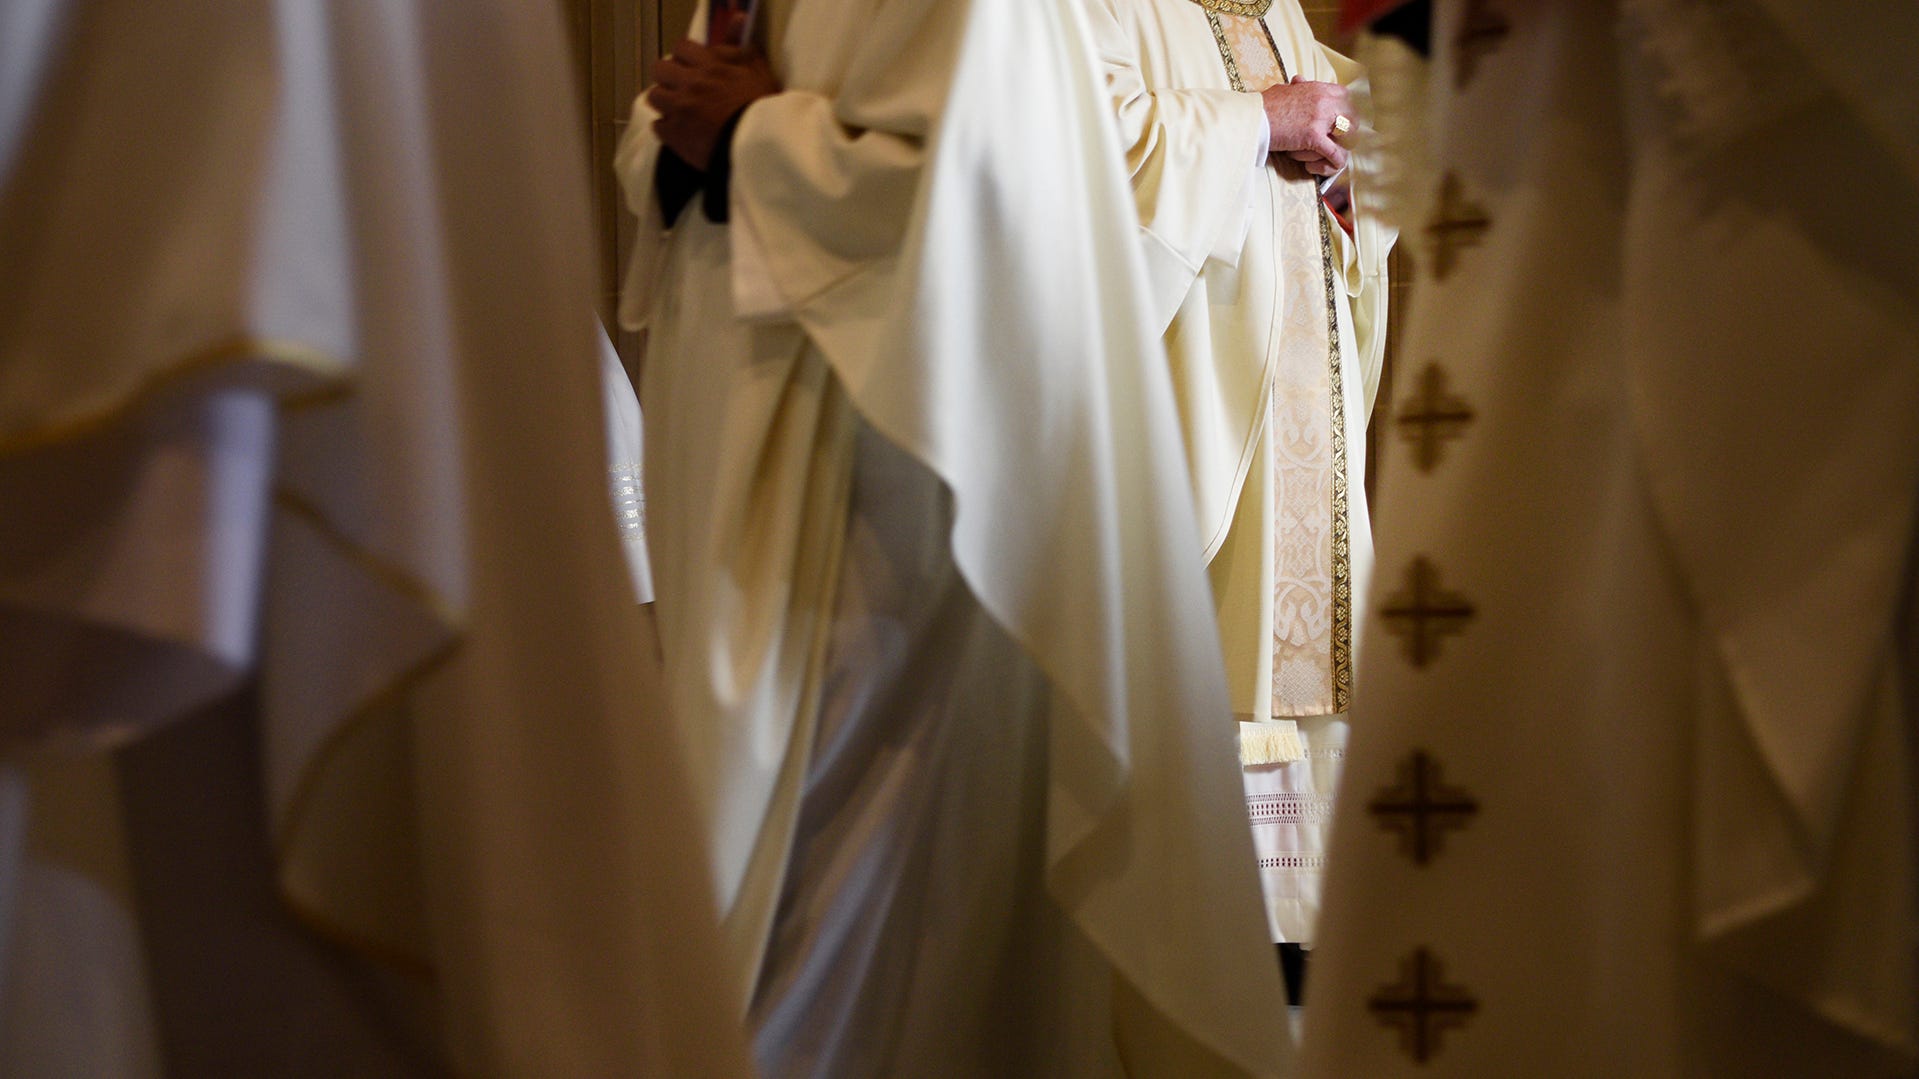 List Of Nj Priests Accused Of Sex Abuse